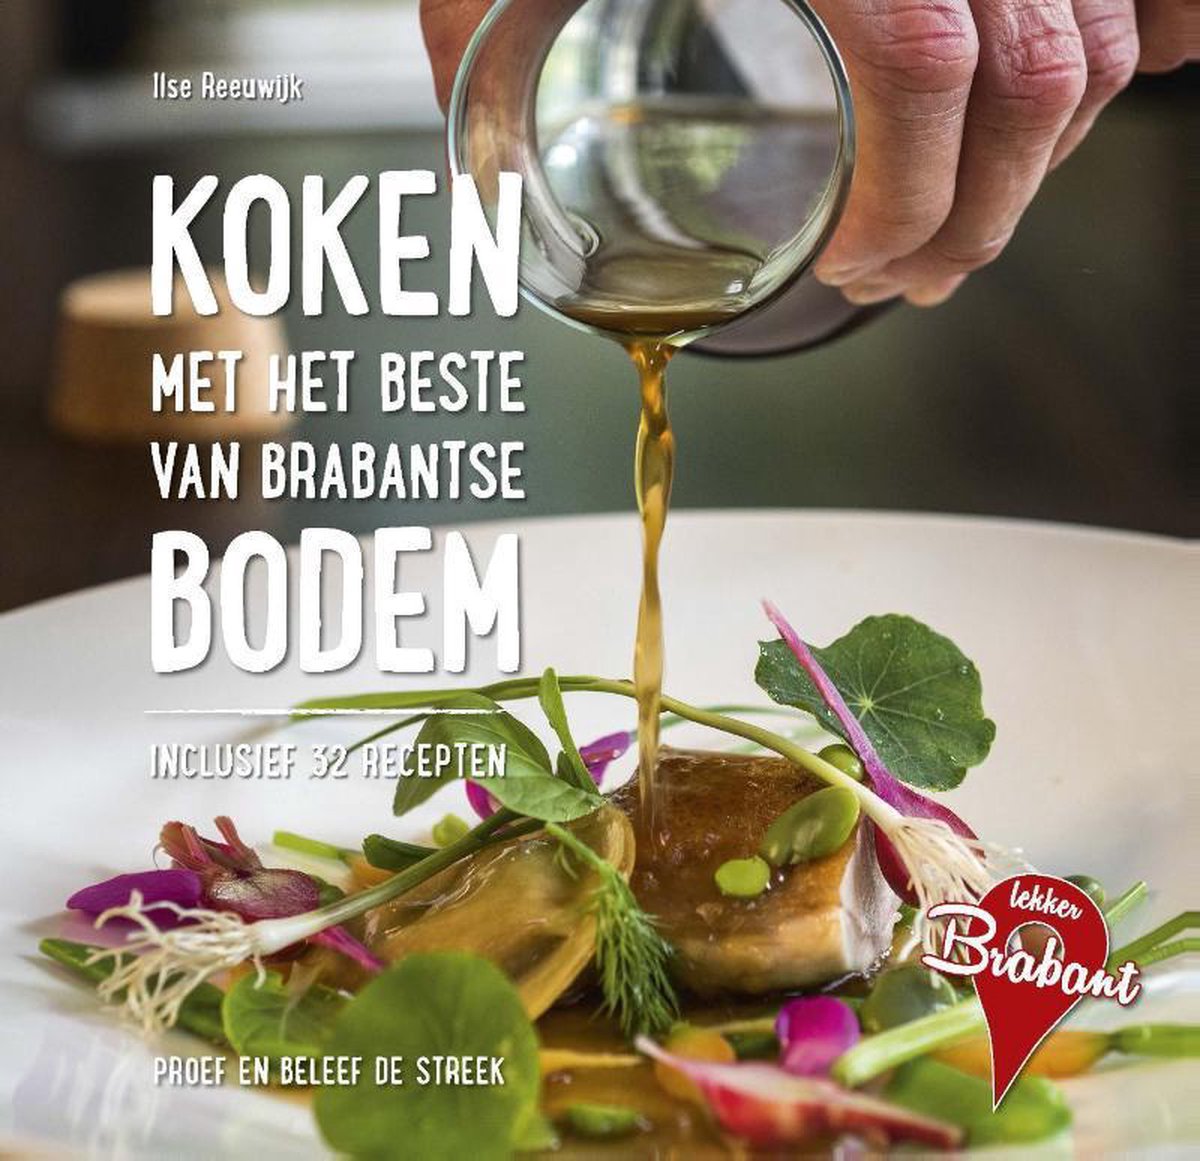 Koken met het beste van Brabantse bodem / Lekker Brabant